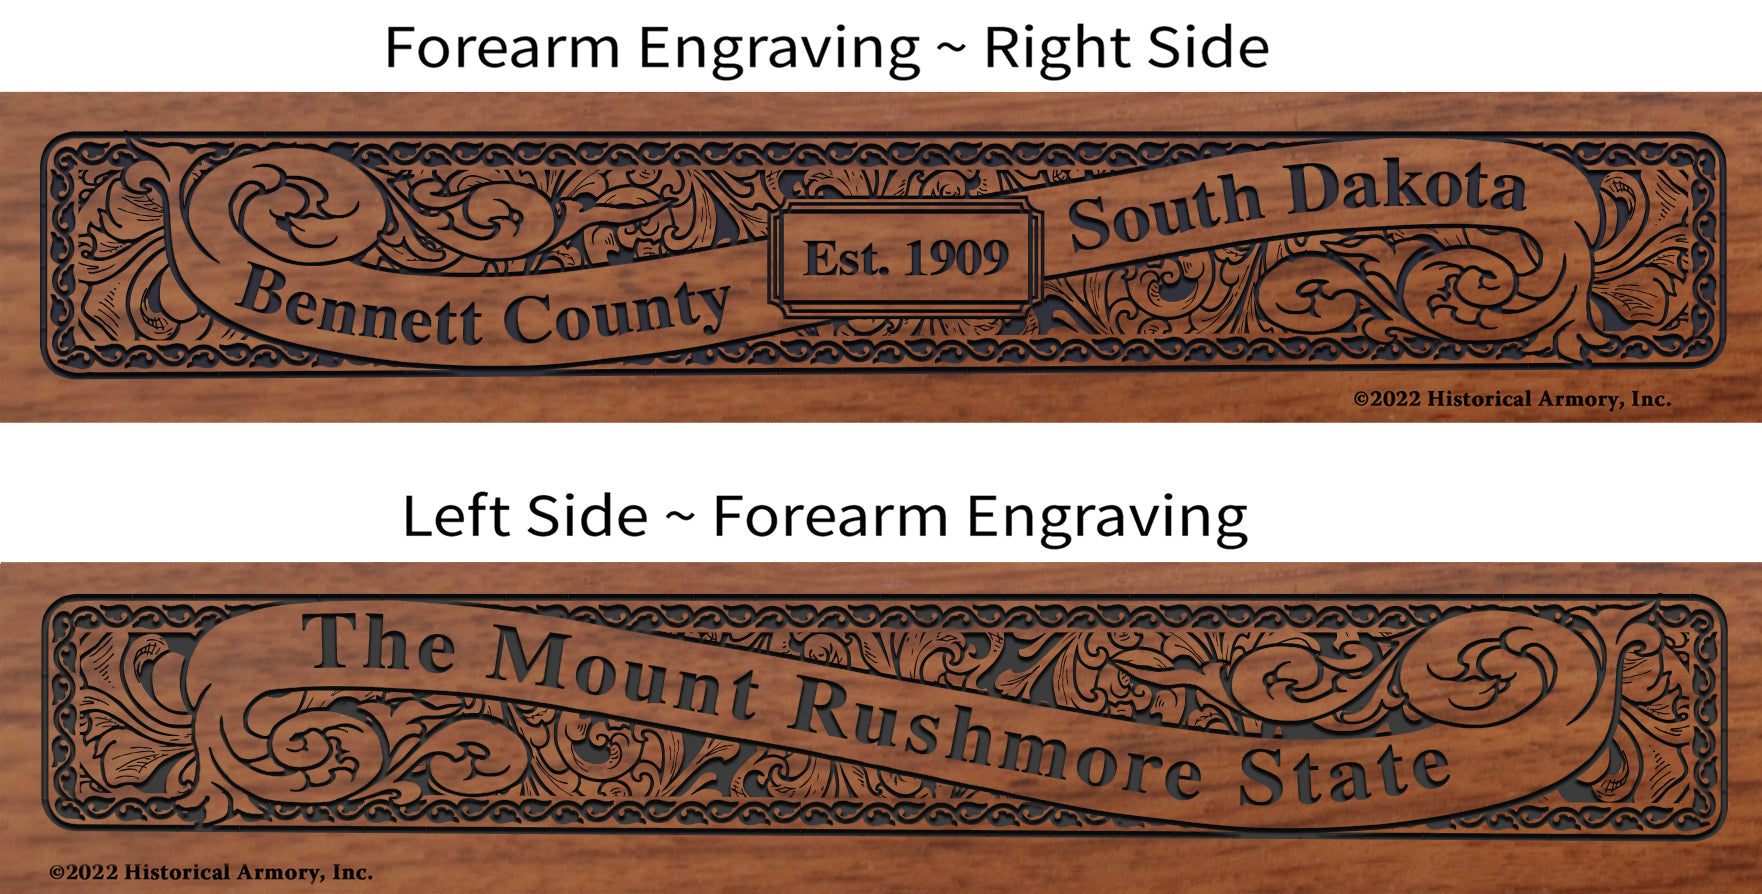 Bennett County South Dakota Engraved Rifle Forearm